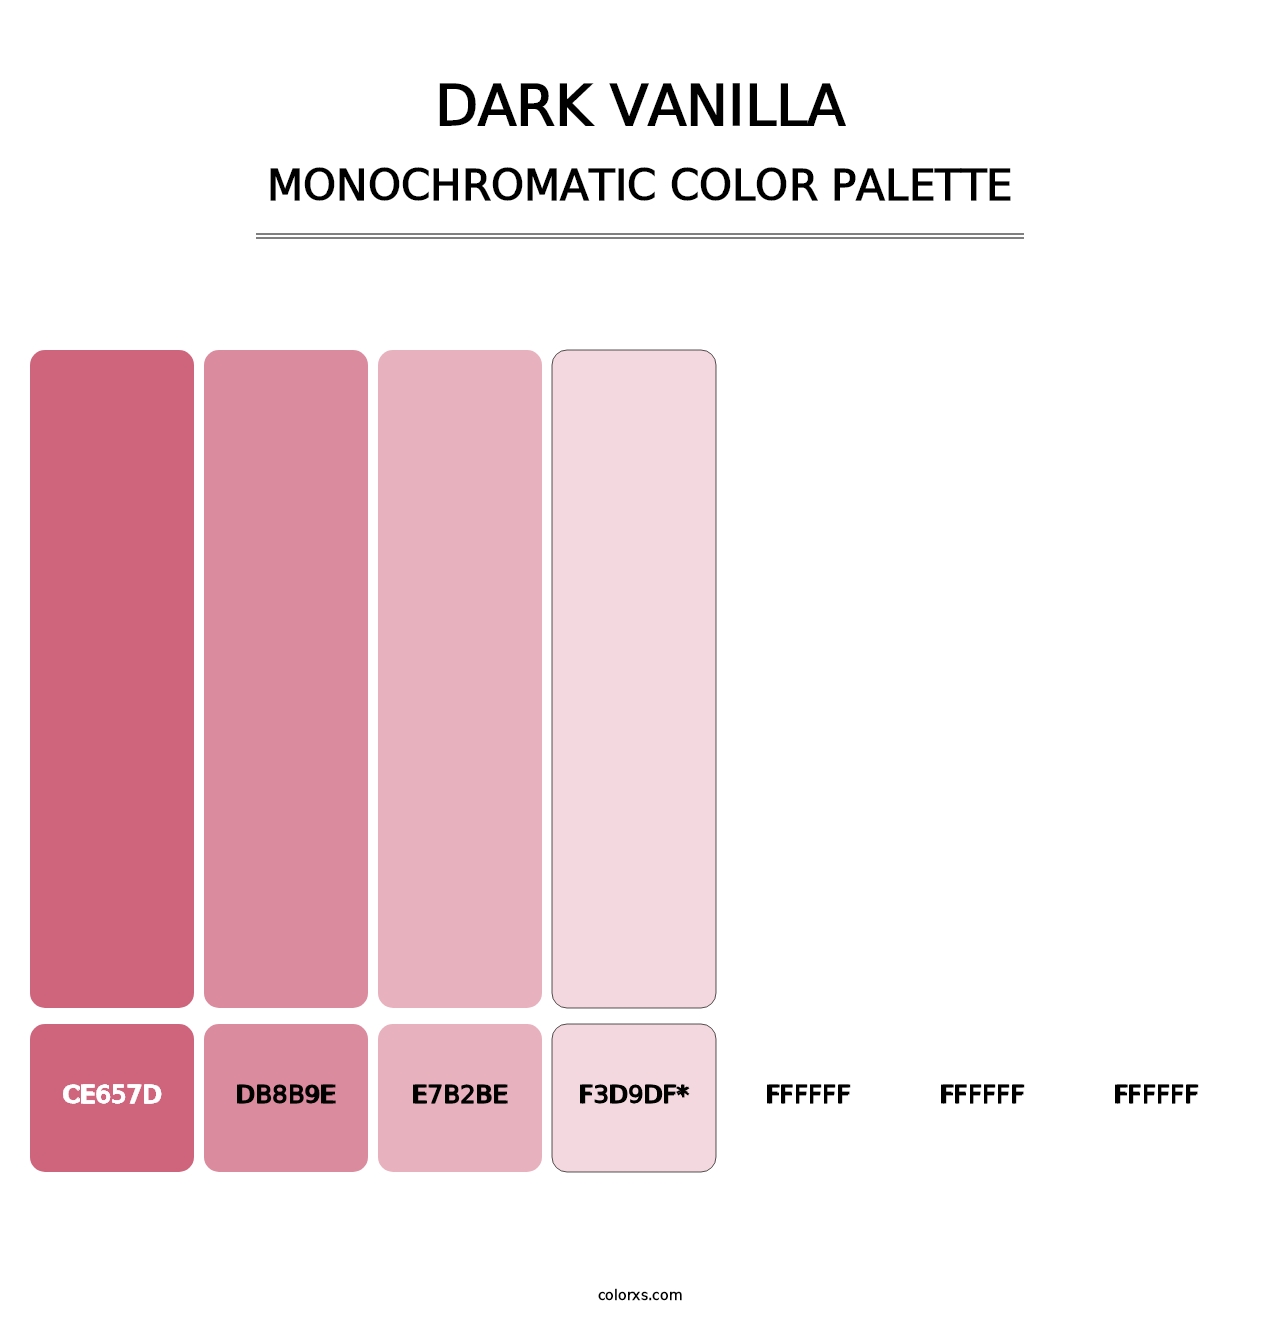 Dark Vanilla - Monochromatic Color Palette